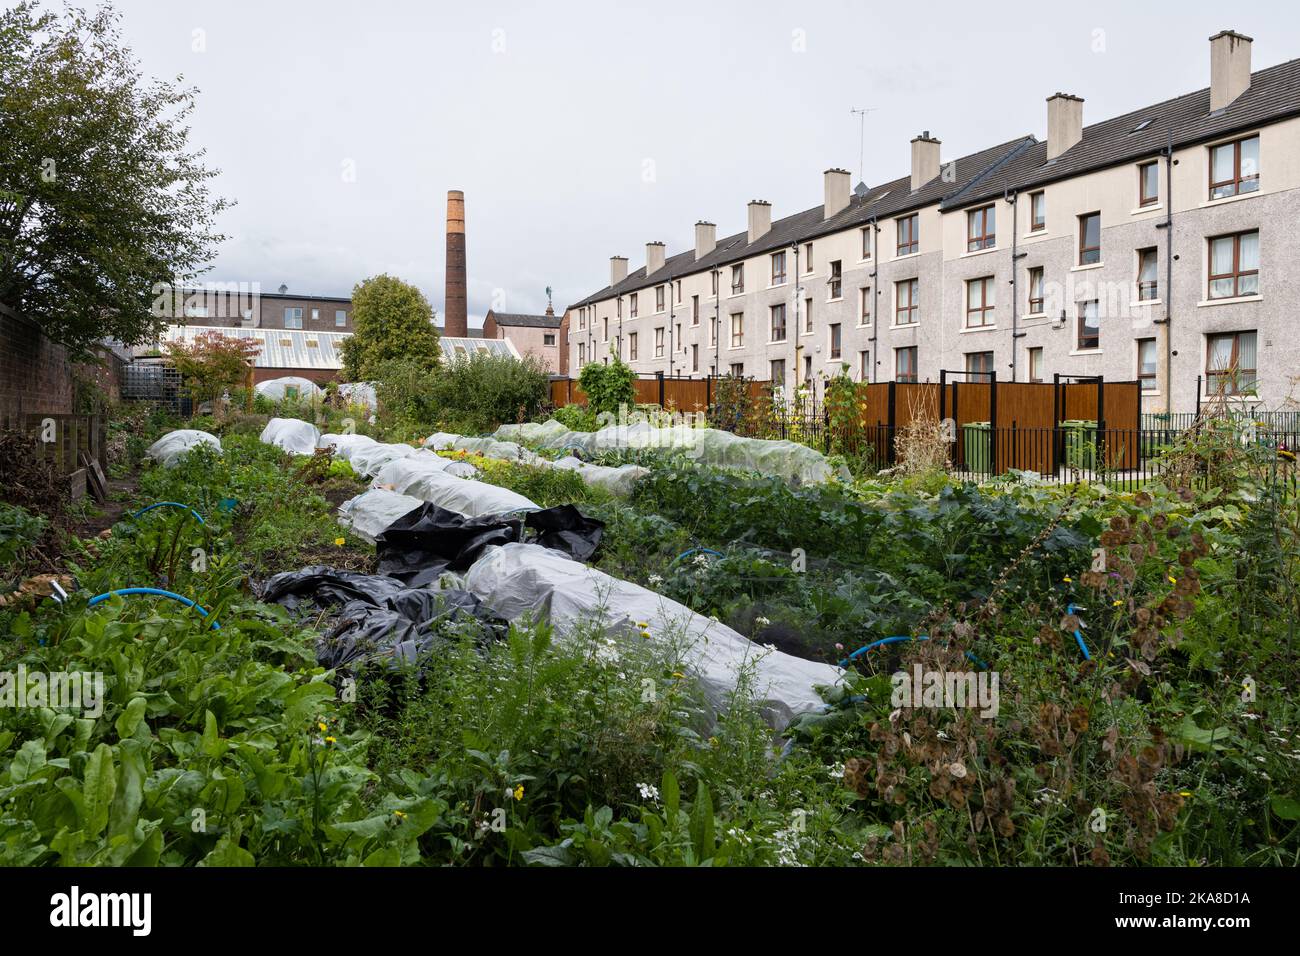 The Wash House Garden, jardin communautaire de marché urbain biologique offrant des ateliers comprenant des ateliers d'économie de semences, Parkhead, Glasgow, Écosse, Royaume-Uni Banque D'Images